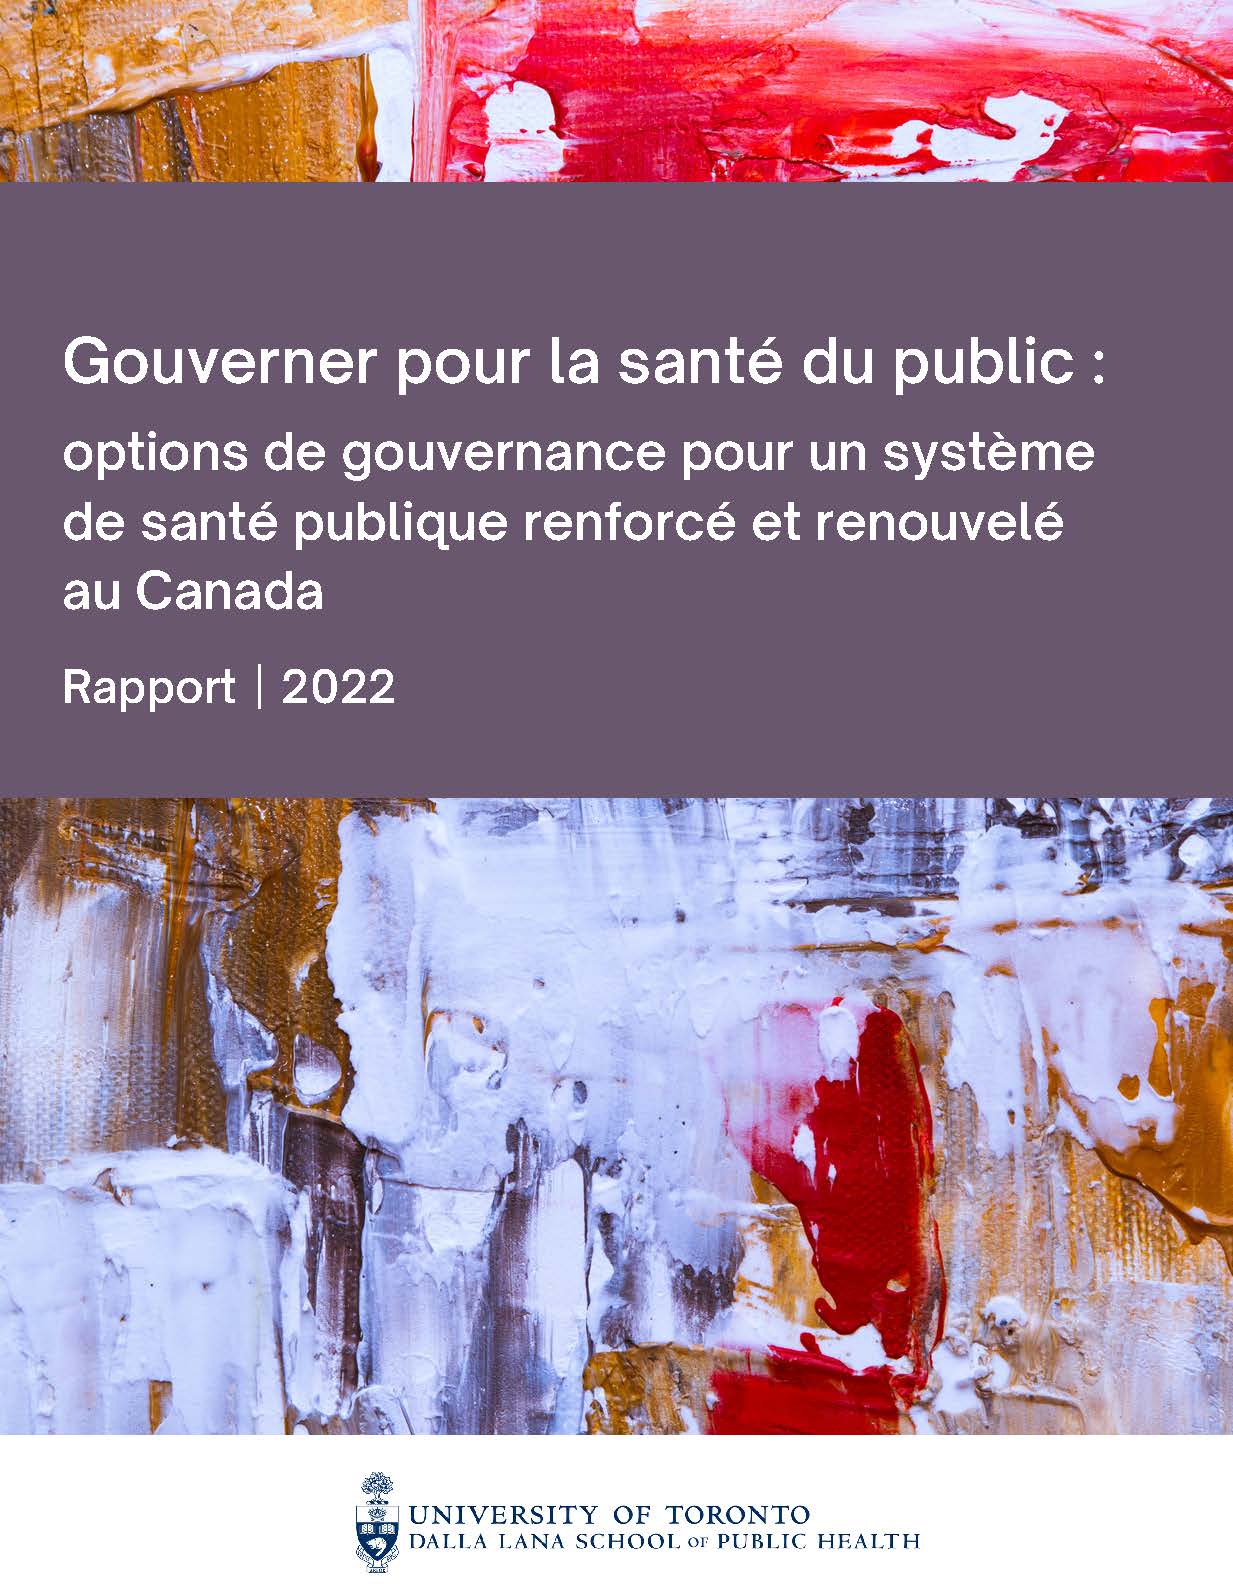 Rapport – Gouverner pour la santé du public : options de gouvernance pour un système de santé publique renforcé et renouvelé au Canada